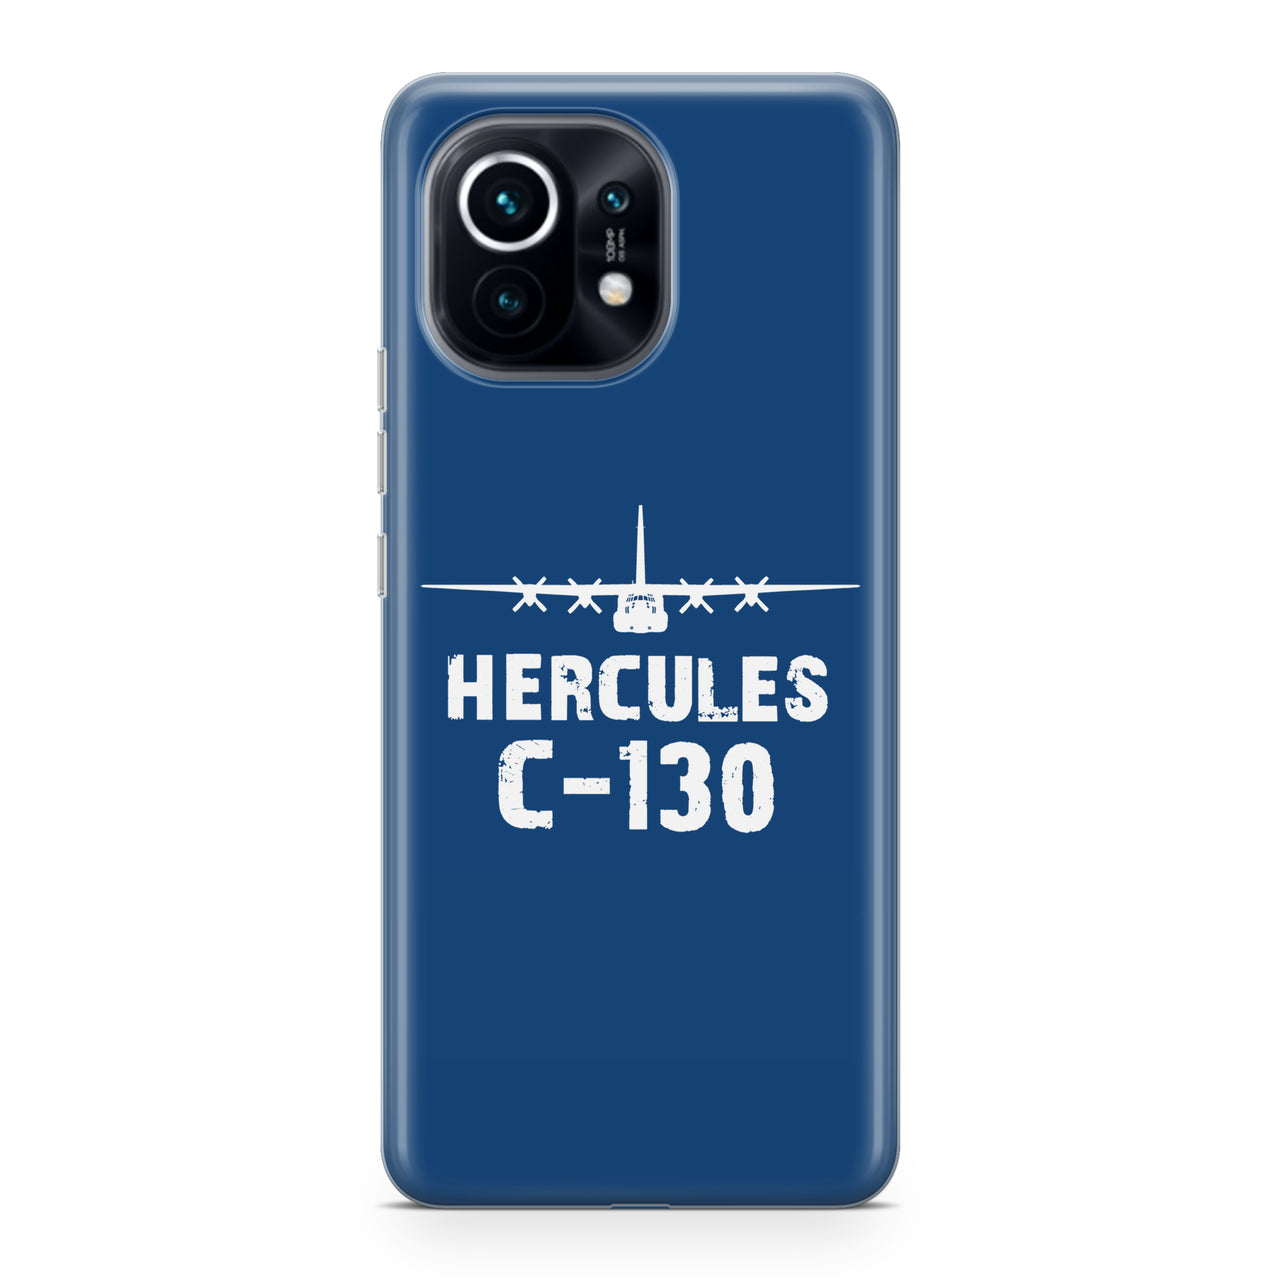 Hercules C-130 & Plane Designed Xiaomi Cases